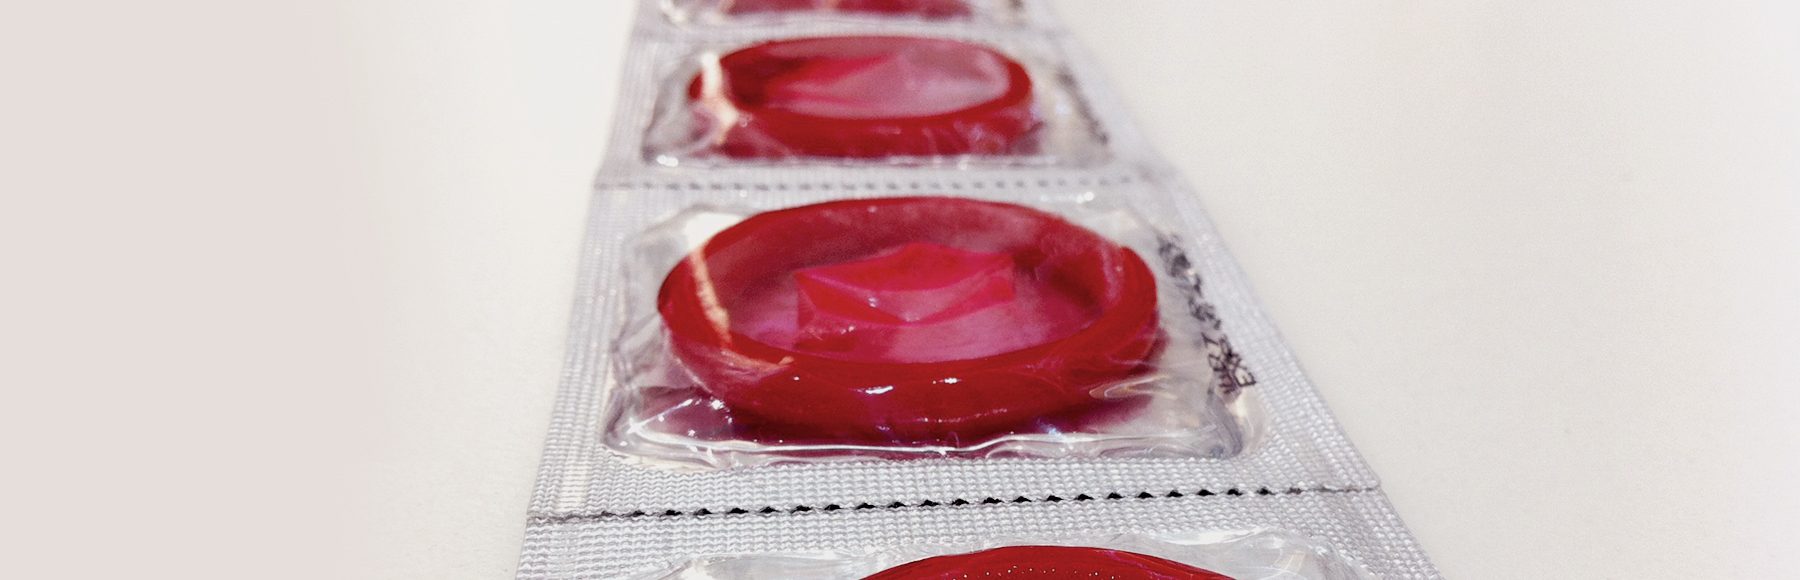 Preservativos estão em falta na África Subsaariana